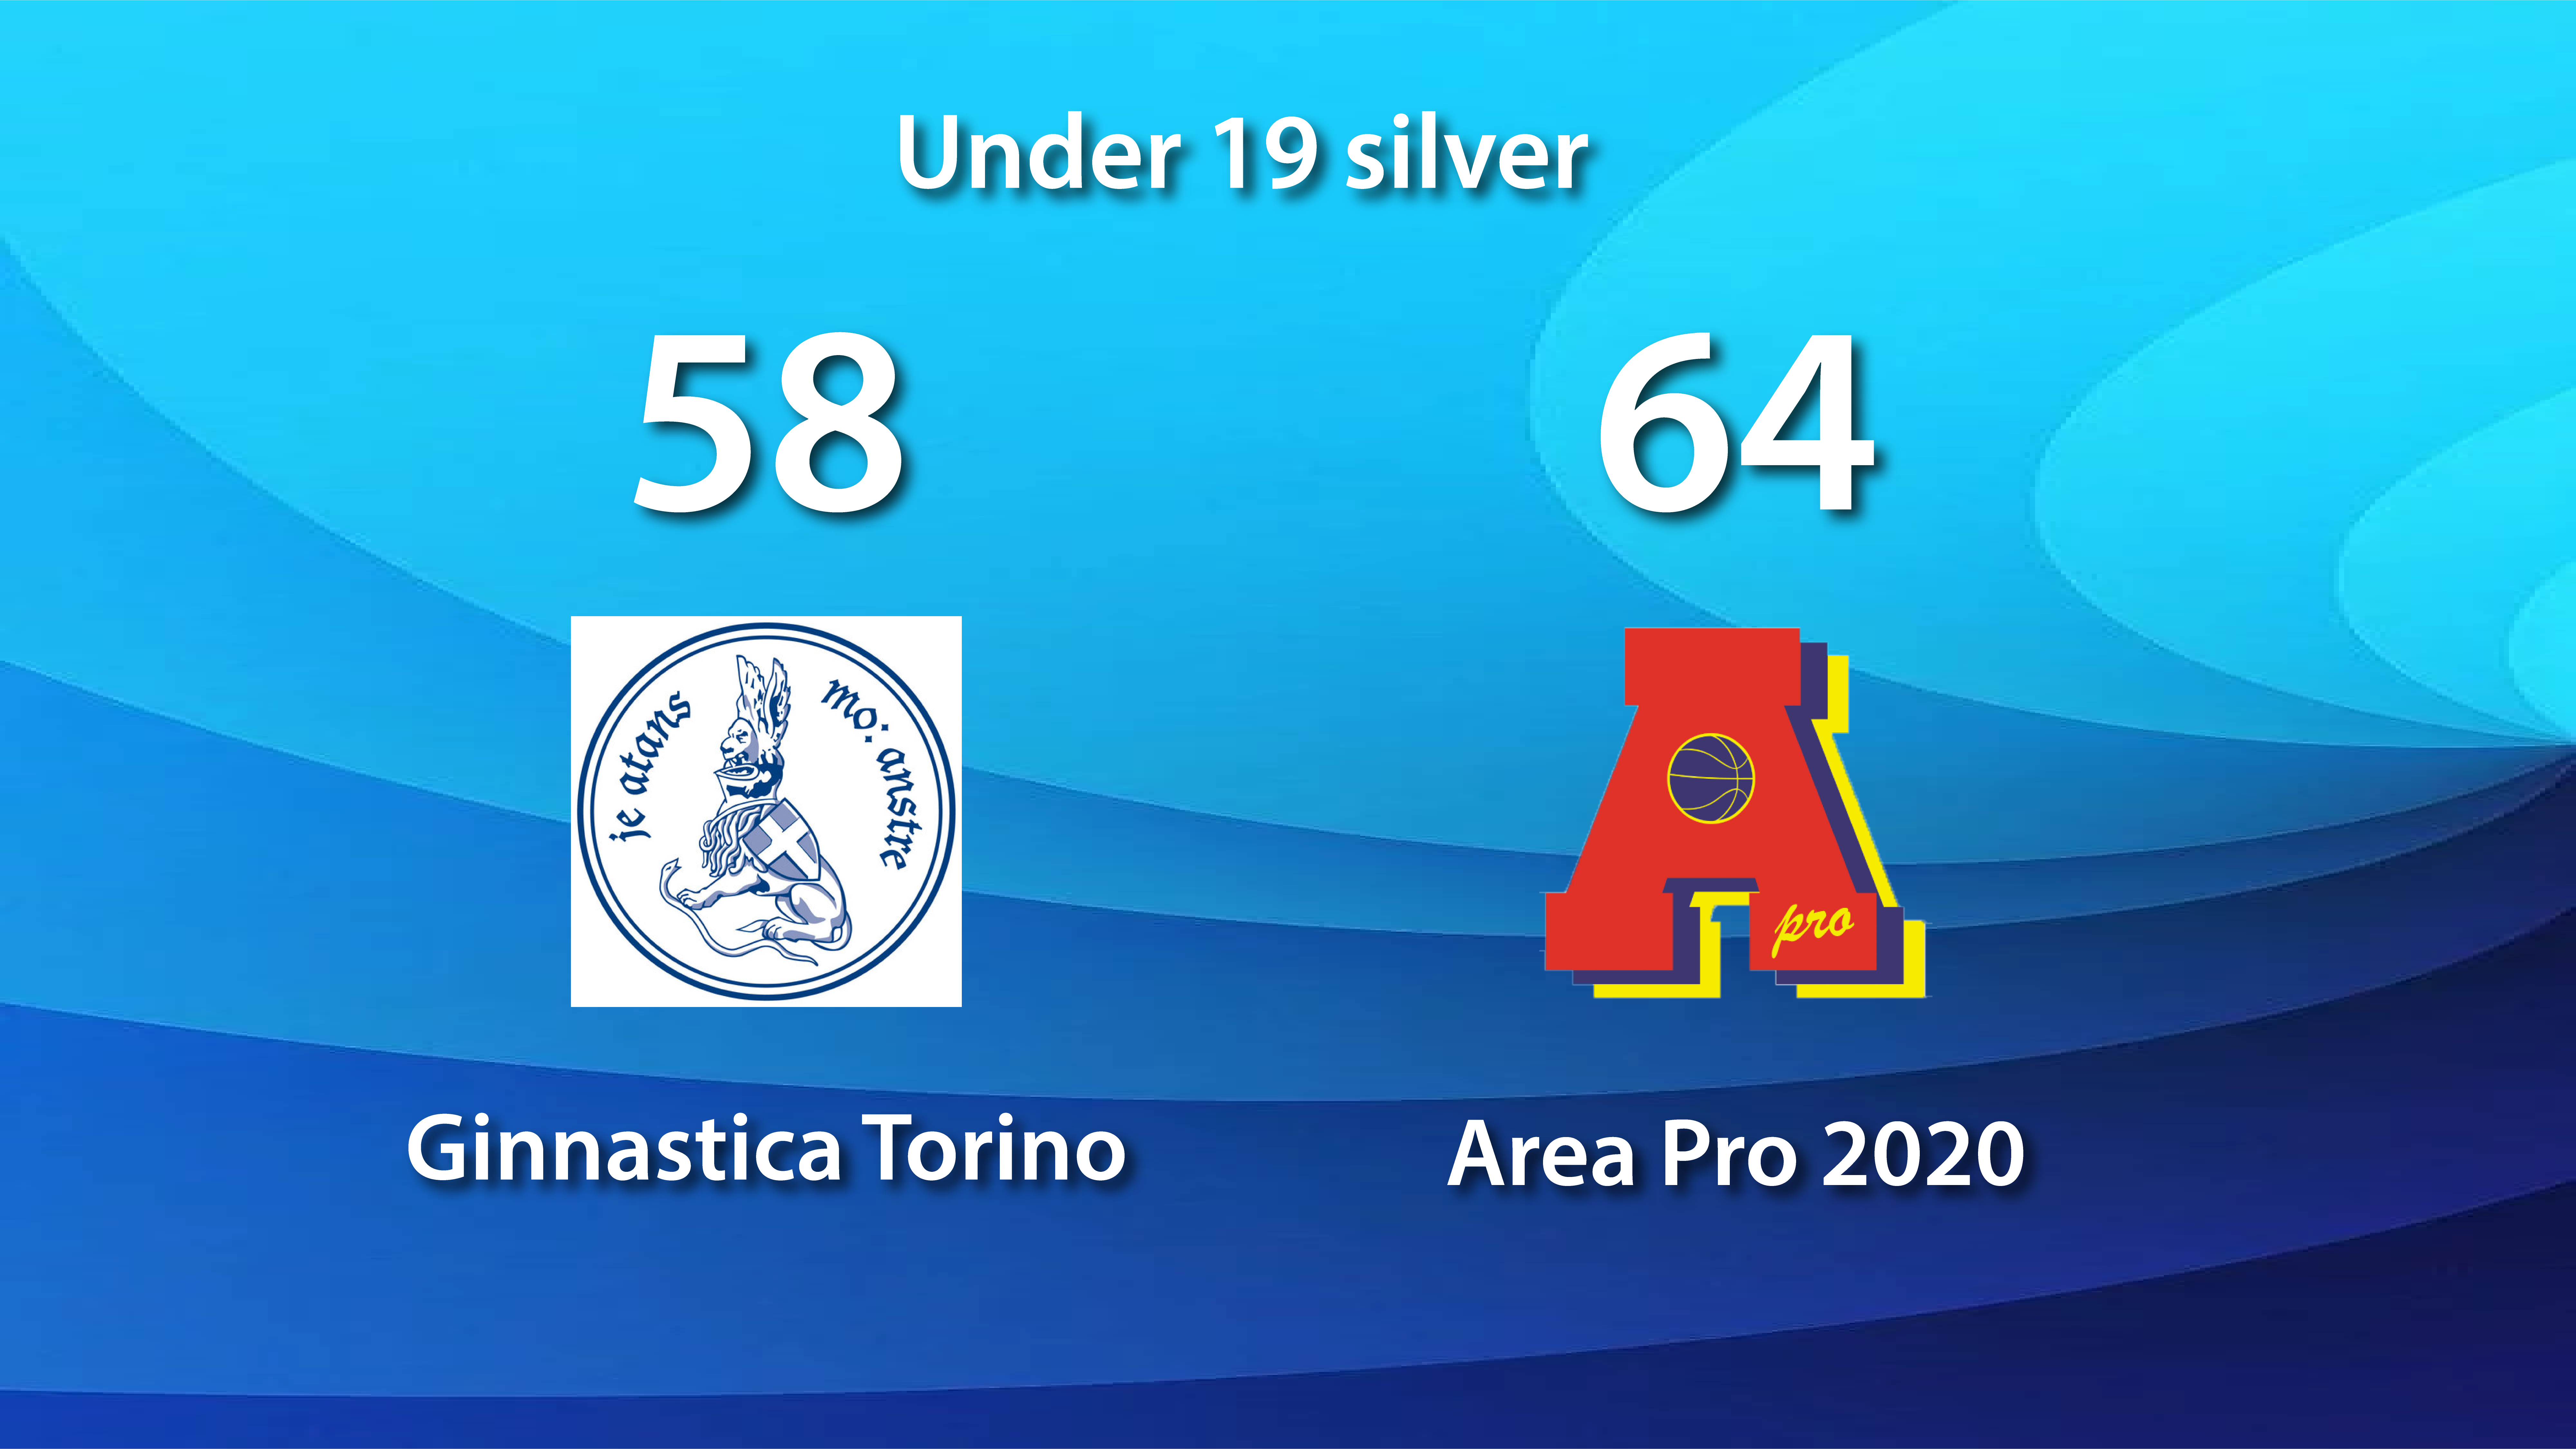 Under 19 silver: AP2020 vince in trasferta con la Ginnastica Torino e si qualifica alla fase Top